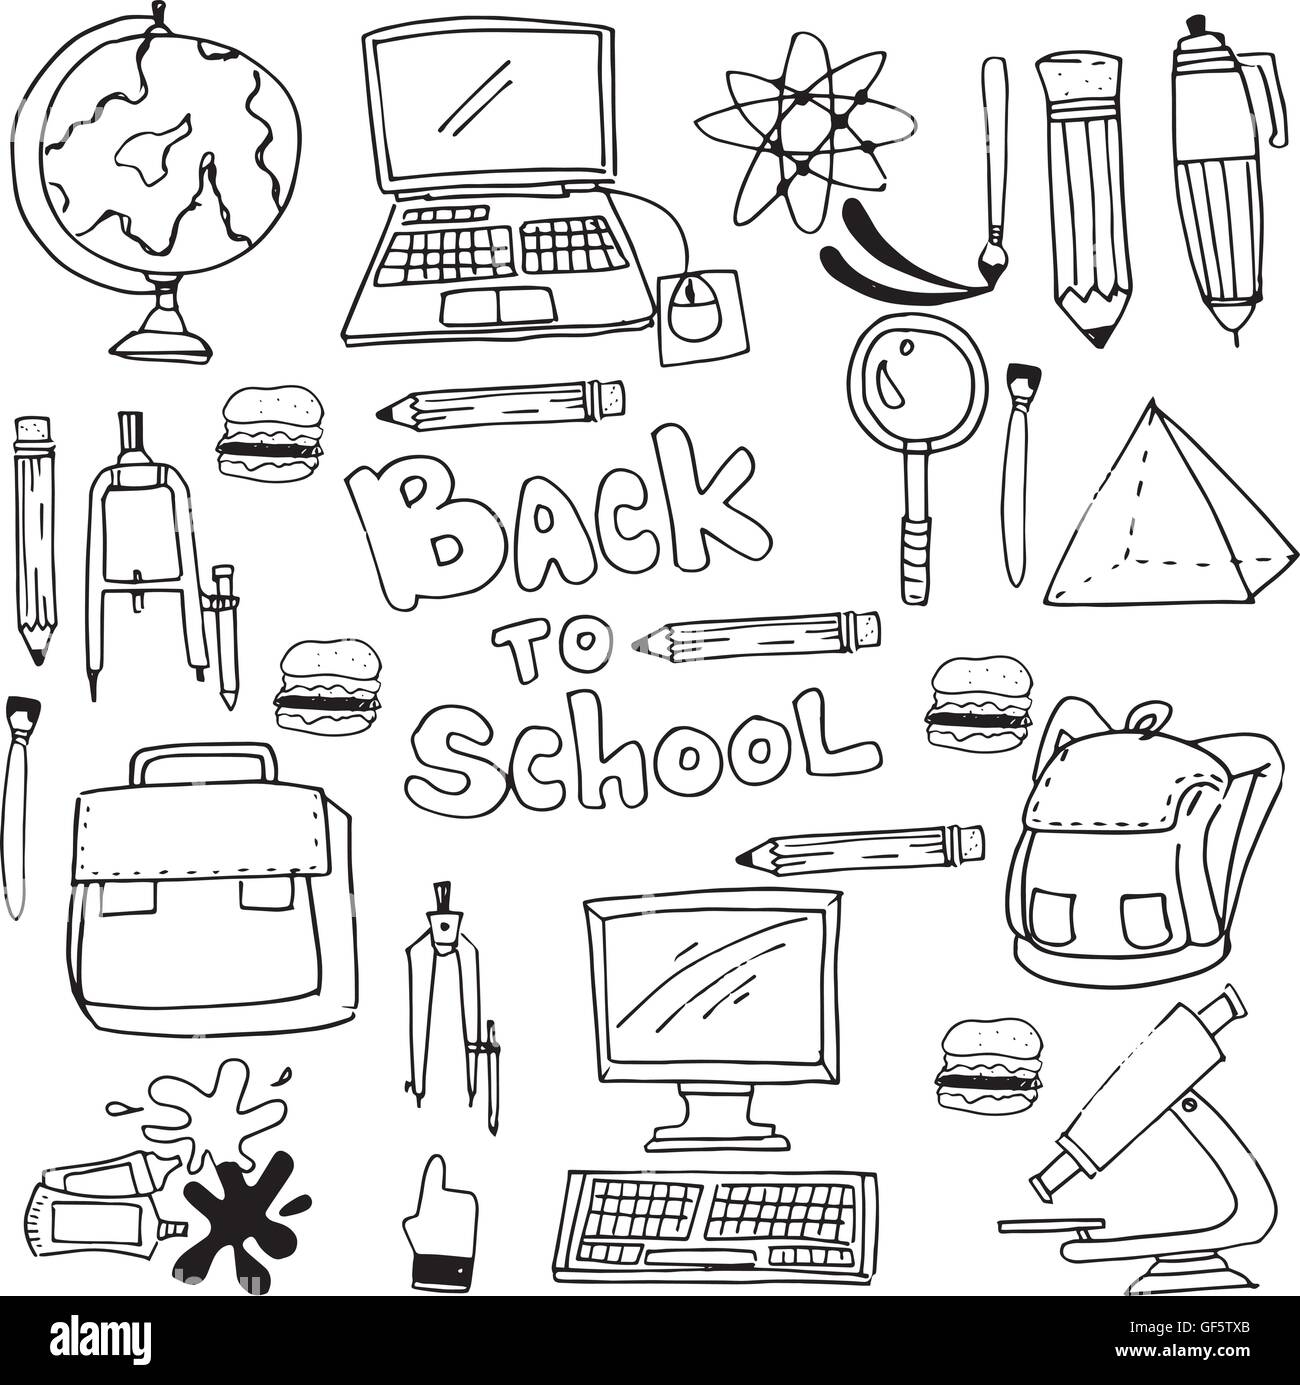 Doodle of hand draw school supplies Stock Vector Image & Art - Alamy